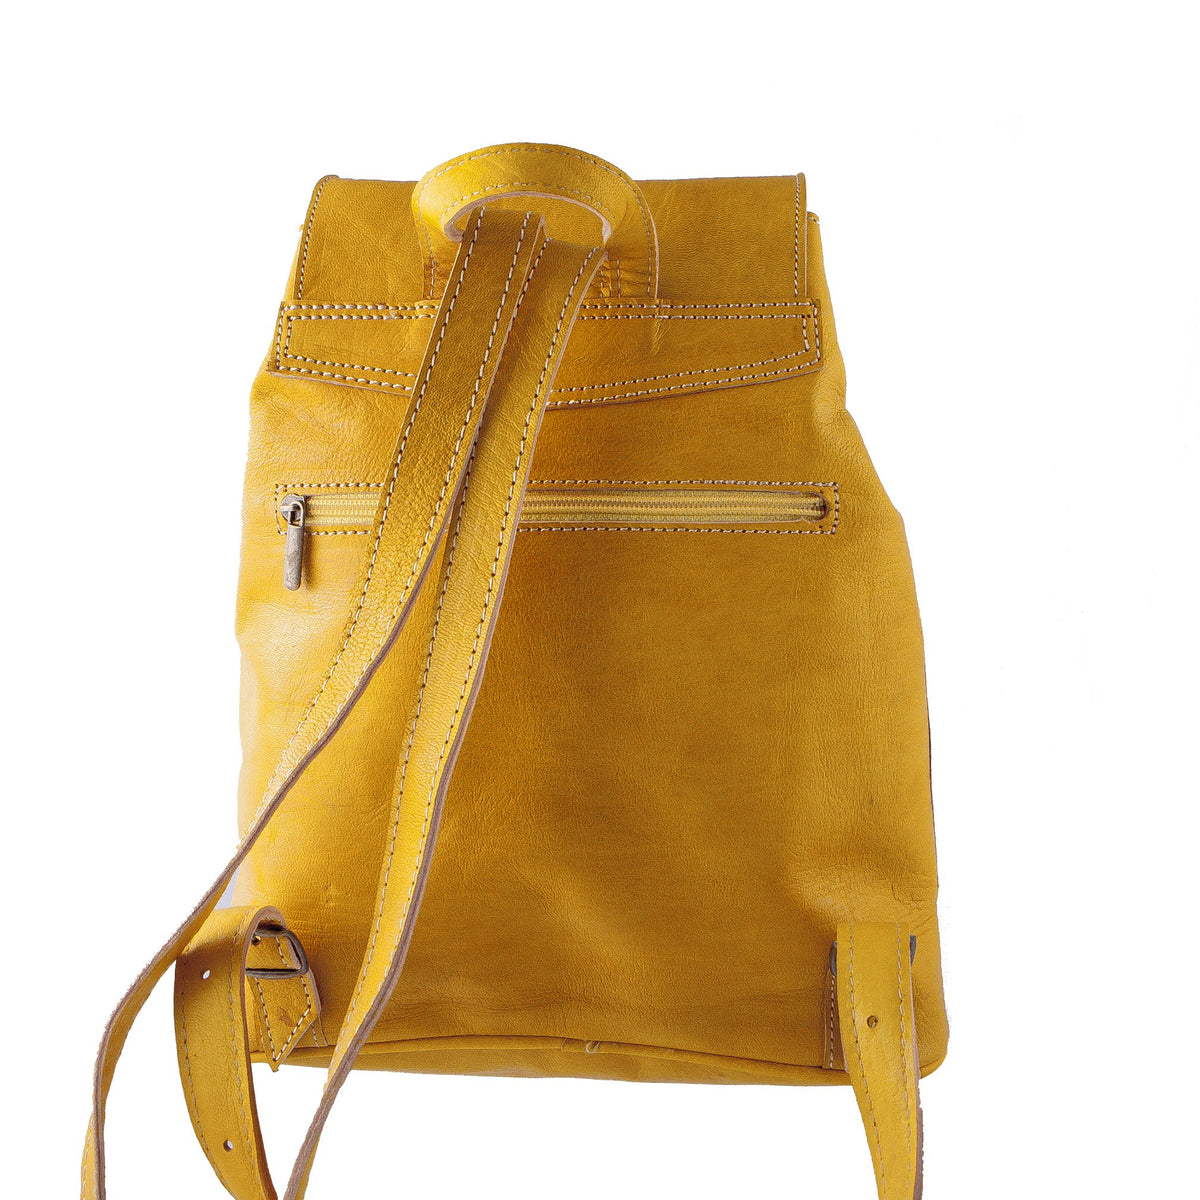 Vintage Style Women's Backpack - Handmade - Brown